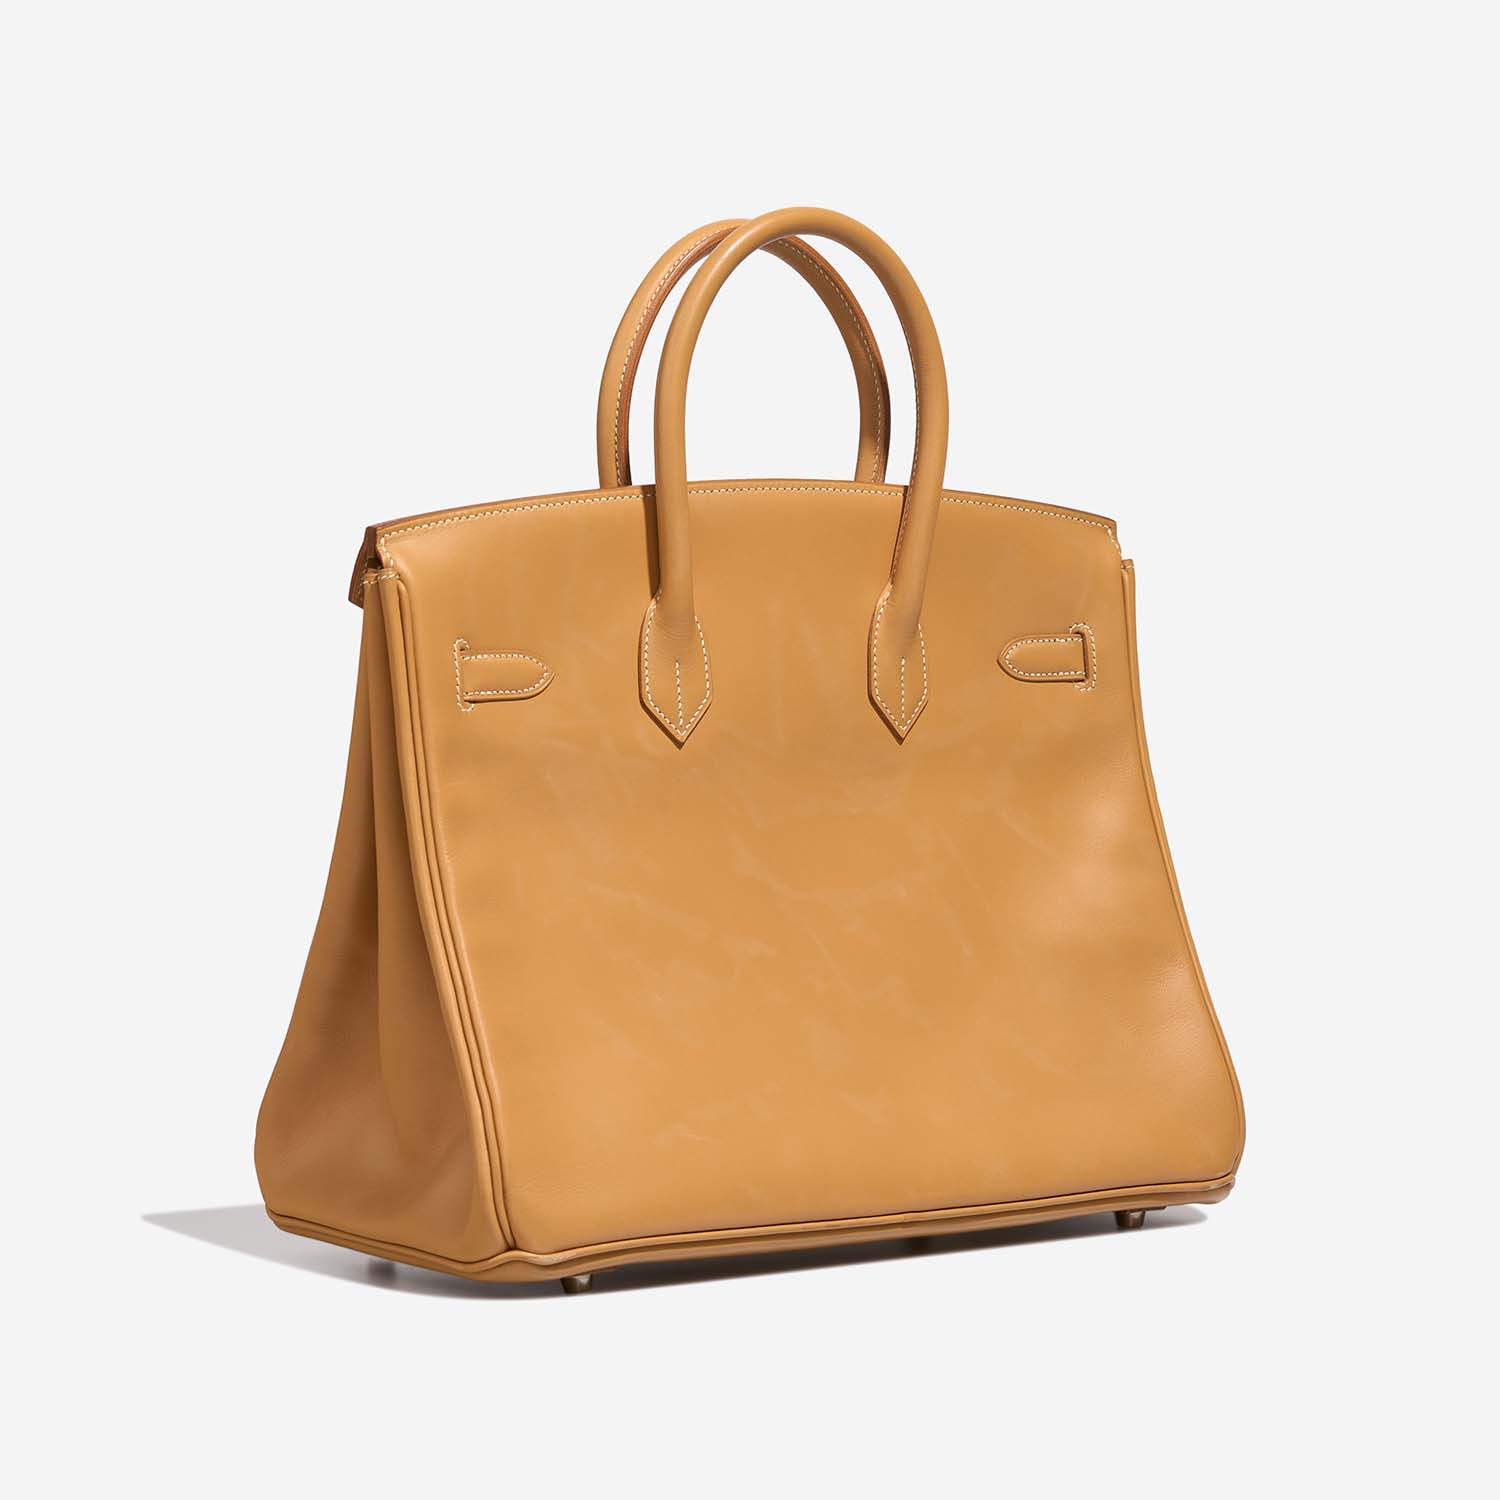 Hermès Birkin 35 Naturel Side Back | Verkaufen Sie Ihre Designer-Tasche auf Saclab.com